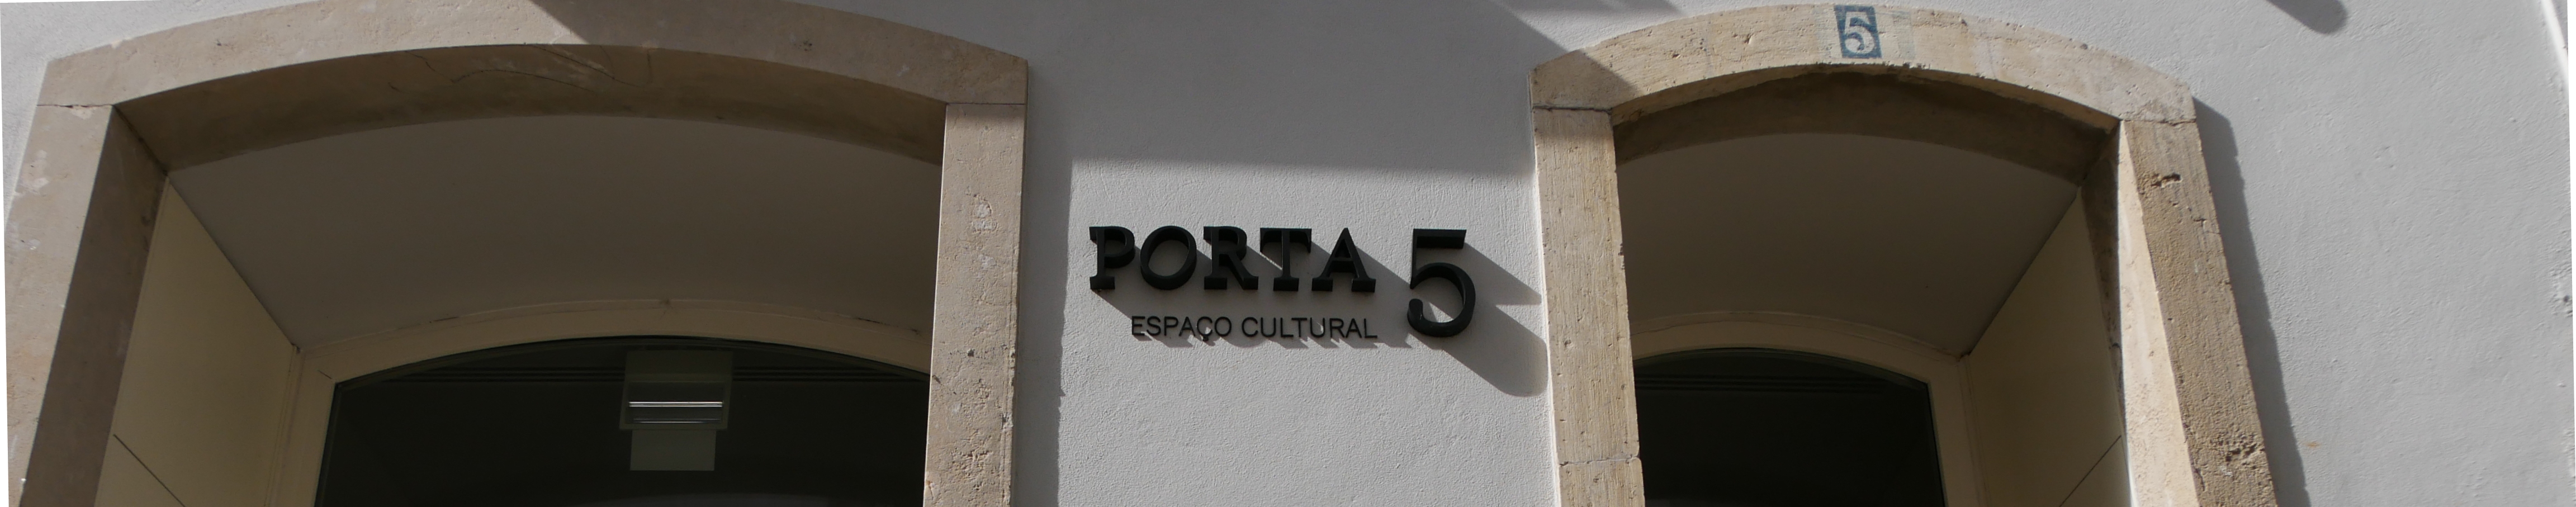 Porta 5 - Espaço Cultural